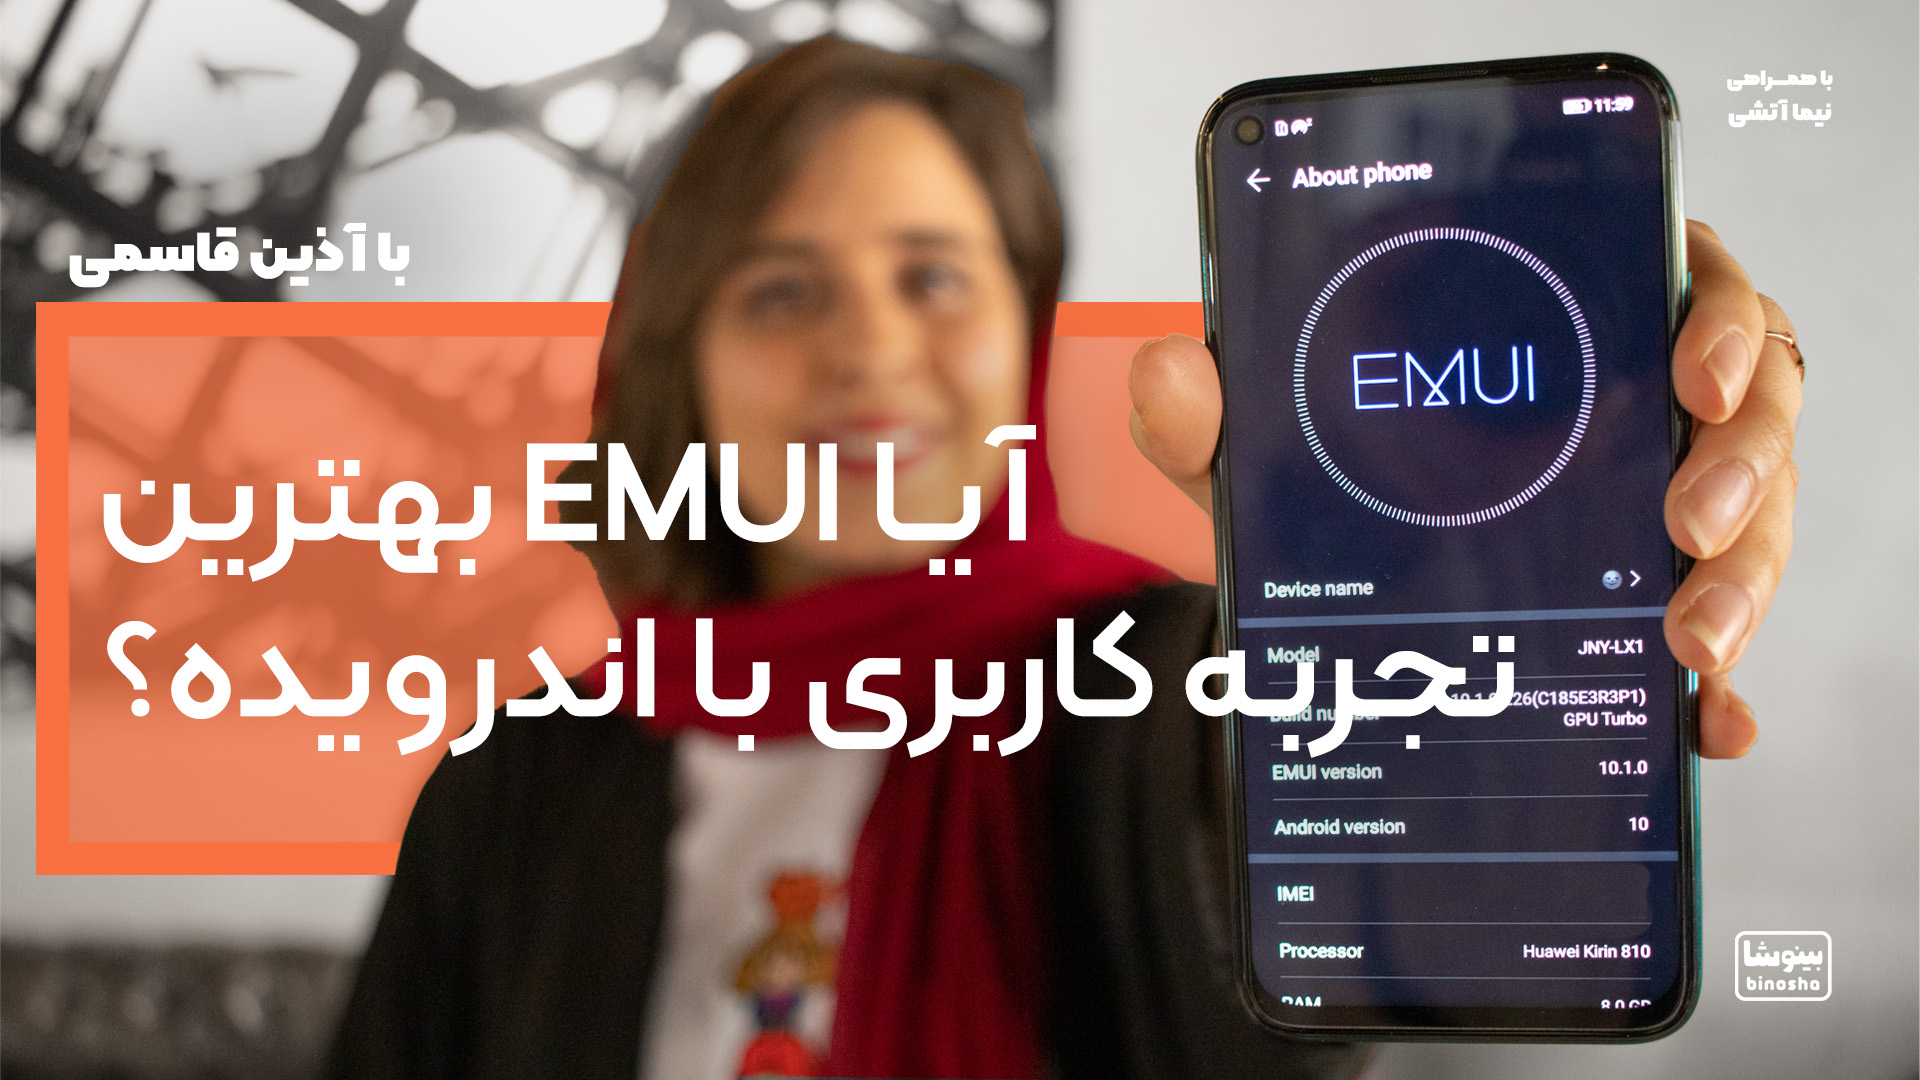 آیا EMUI بهترین تجربه کاربری با اندرویده؟